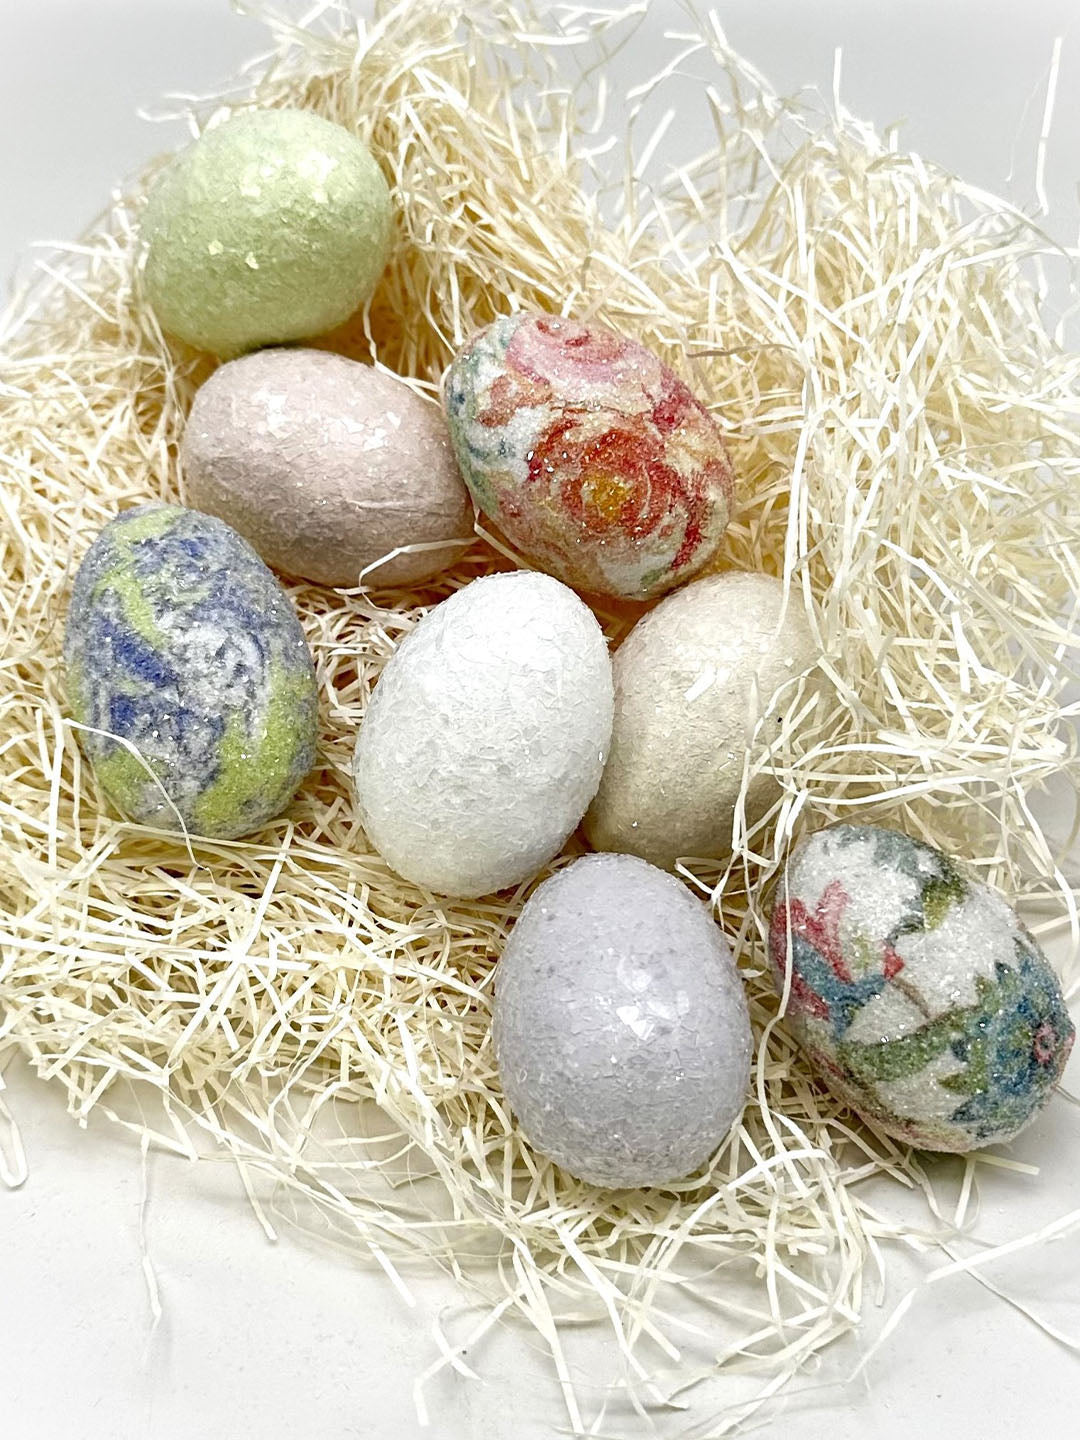 Solid-Colored Eggs - Medium, Cream